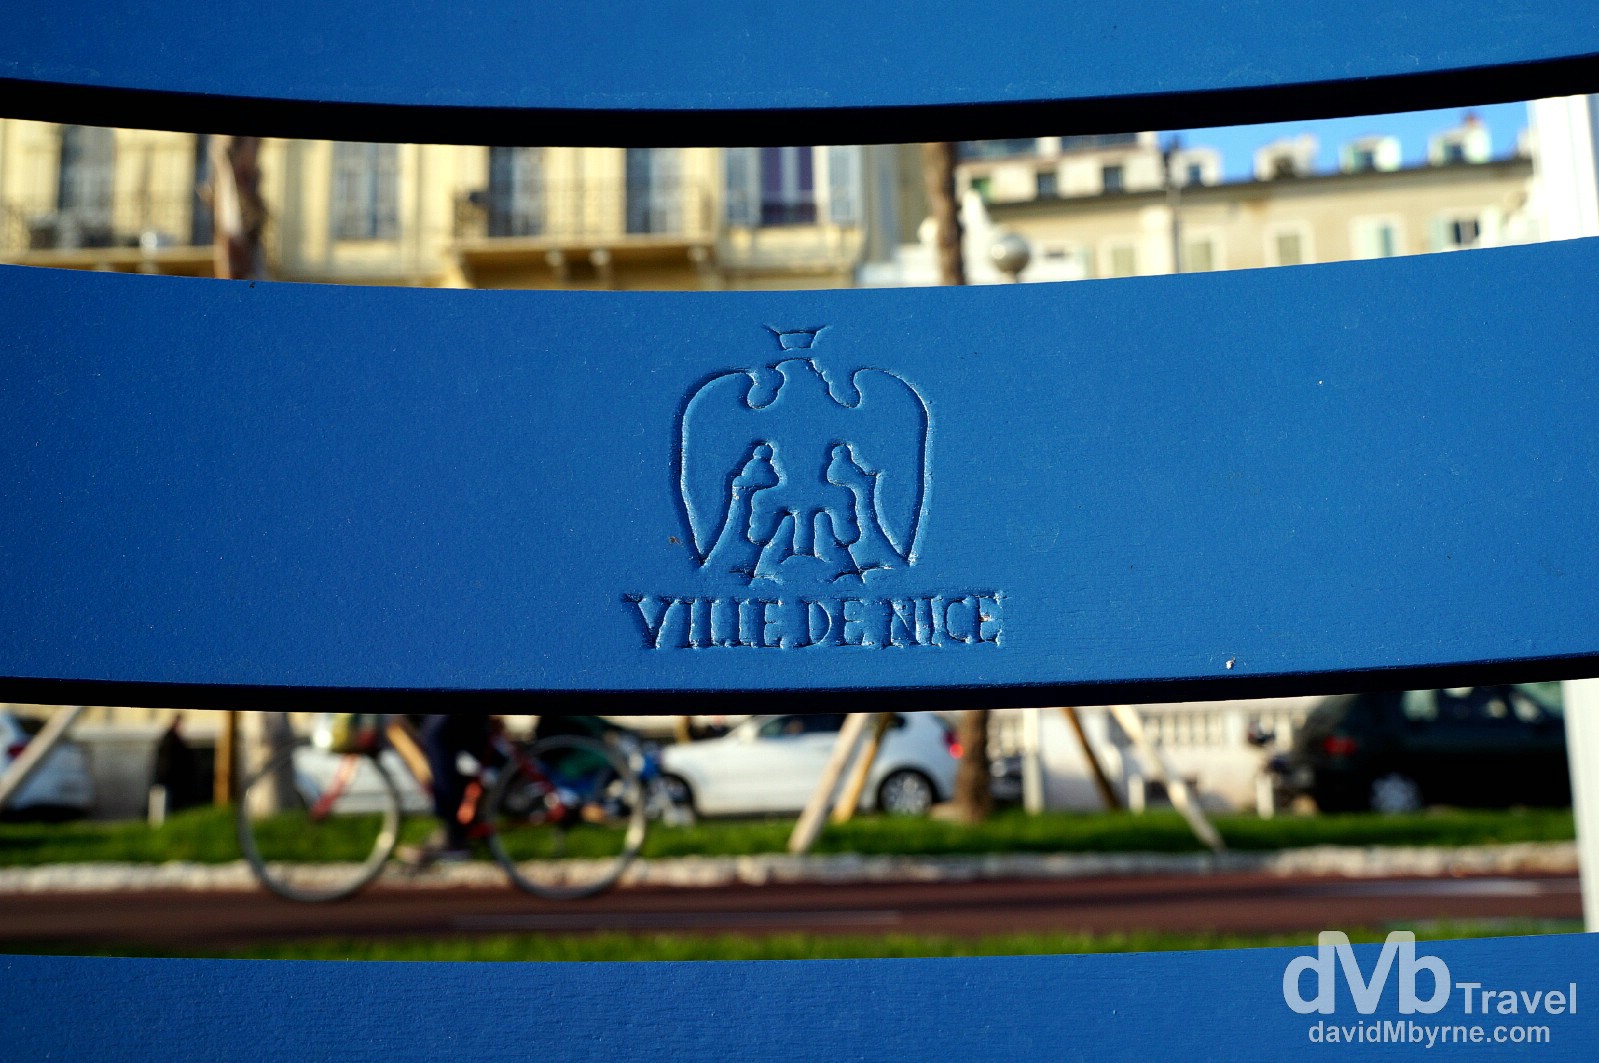 Distinctive blue seats on the beachfront Promenade des Anglais, Nice, Côte d'Azur, France. March 14, 2014.